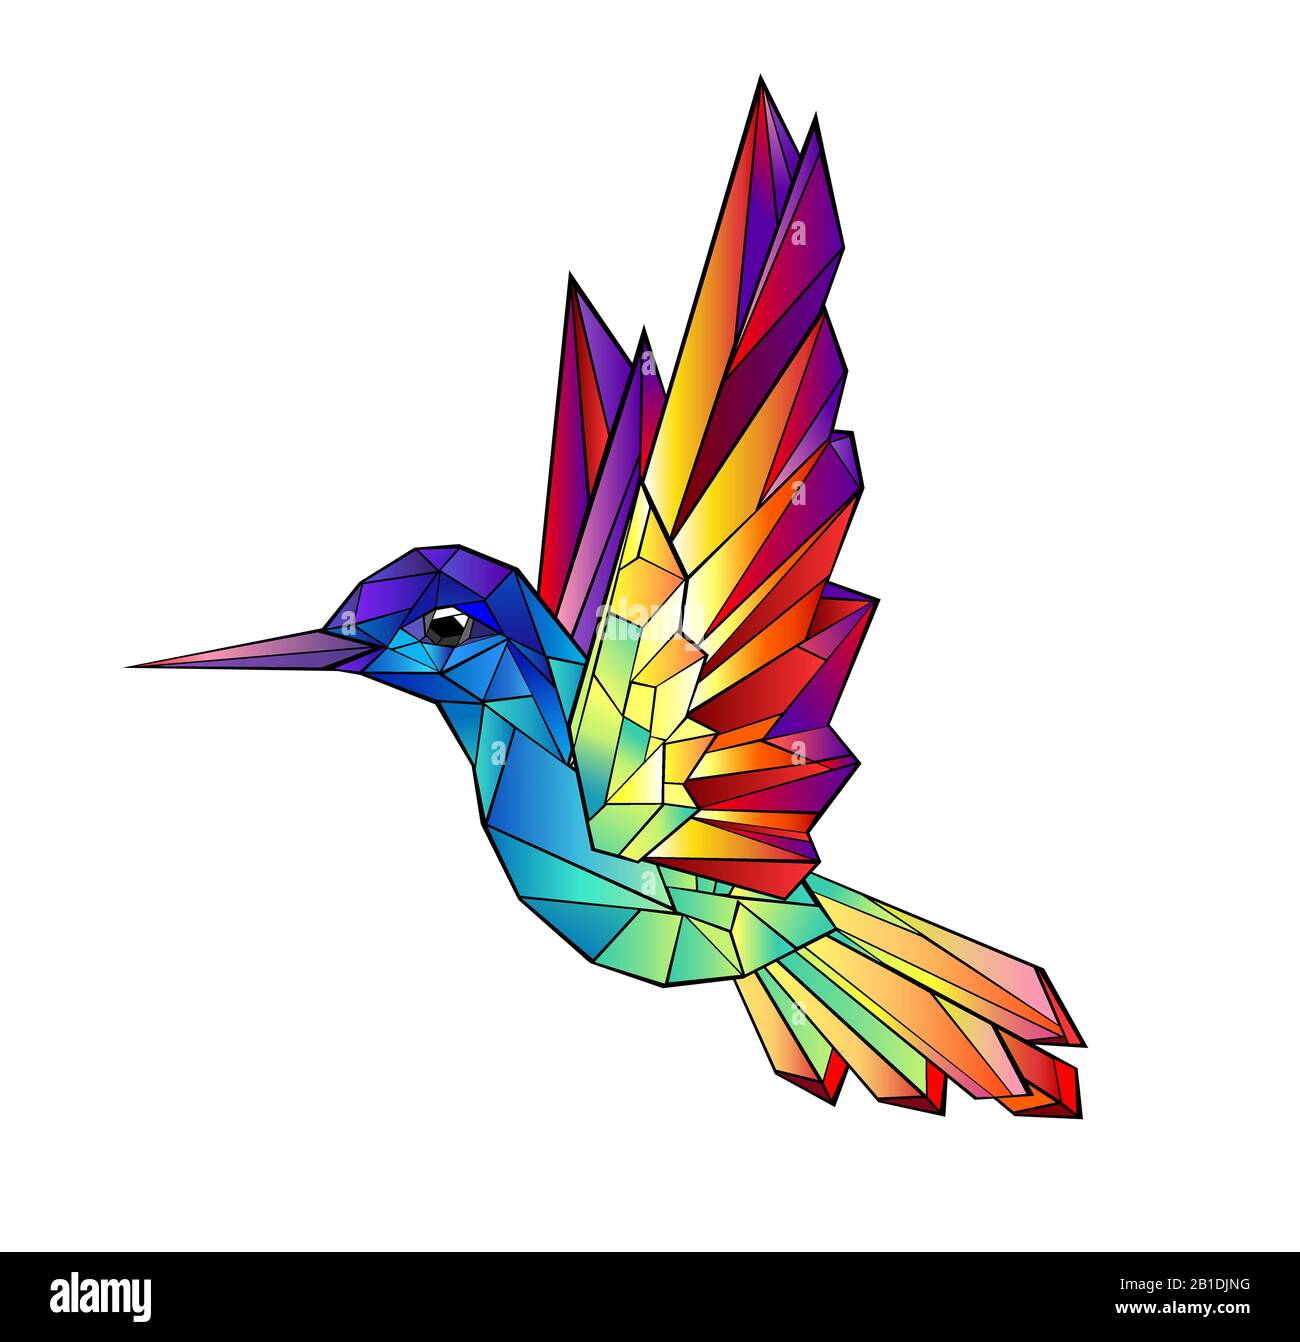 Kunstvoll gezeichneter Regenbogen, leuchtende, helle, polygonale Kolibris auf weißem Hintergrund. Tattoo-Stil. Stock Vektor